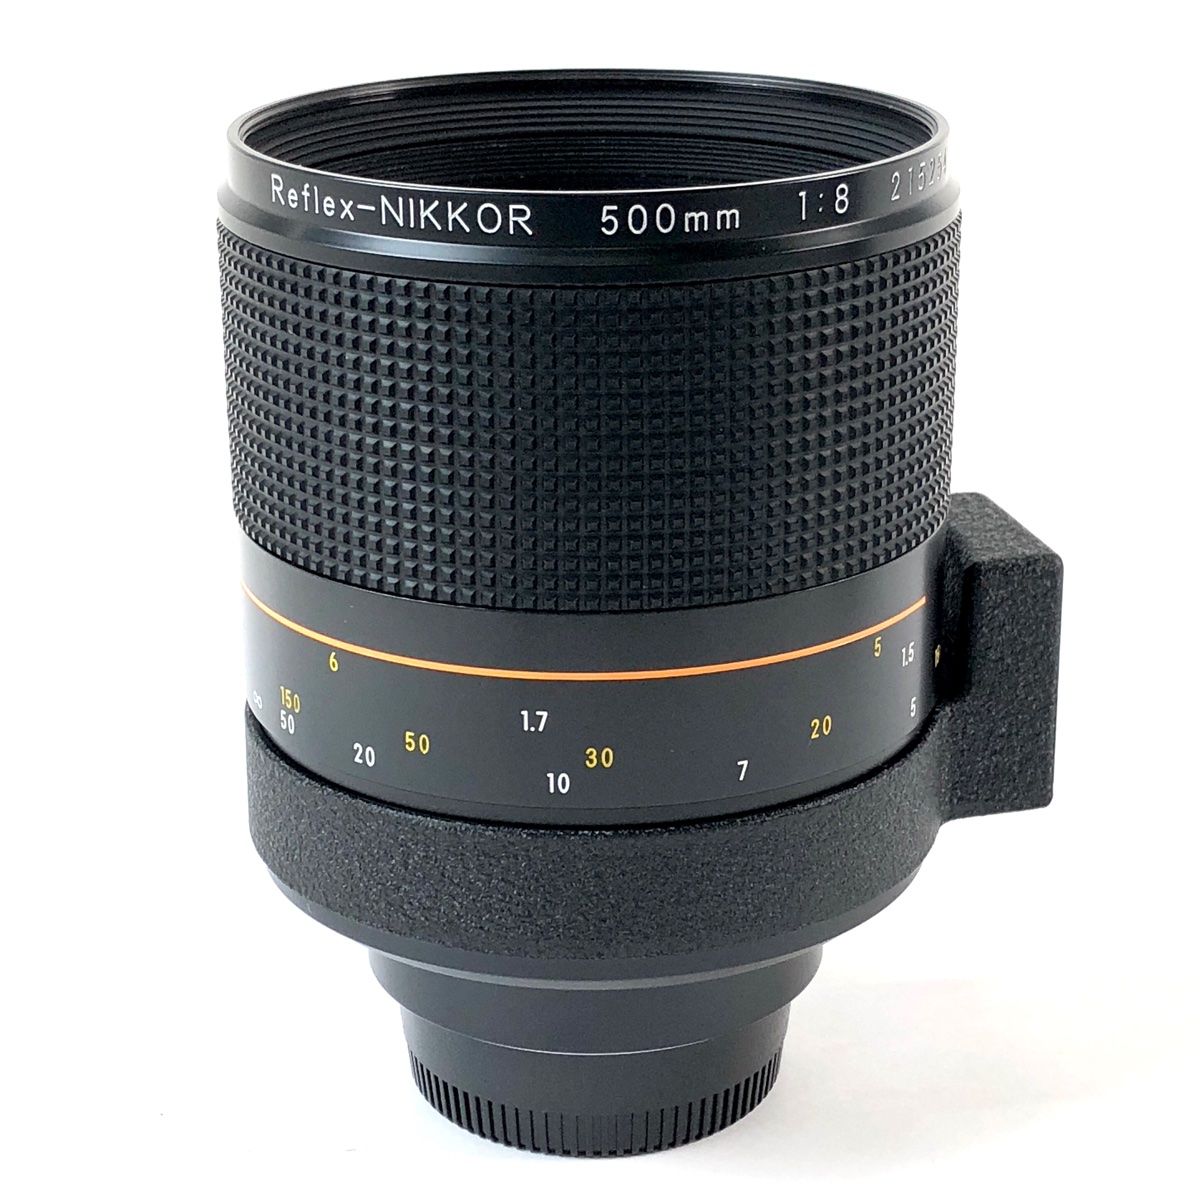 ニコン Nikon Reflex-NIKKOR 500mm F8 ミラー 一眼カメラ用レンズ 